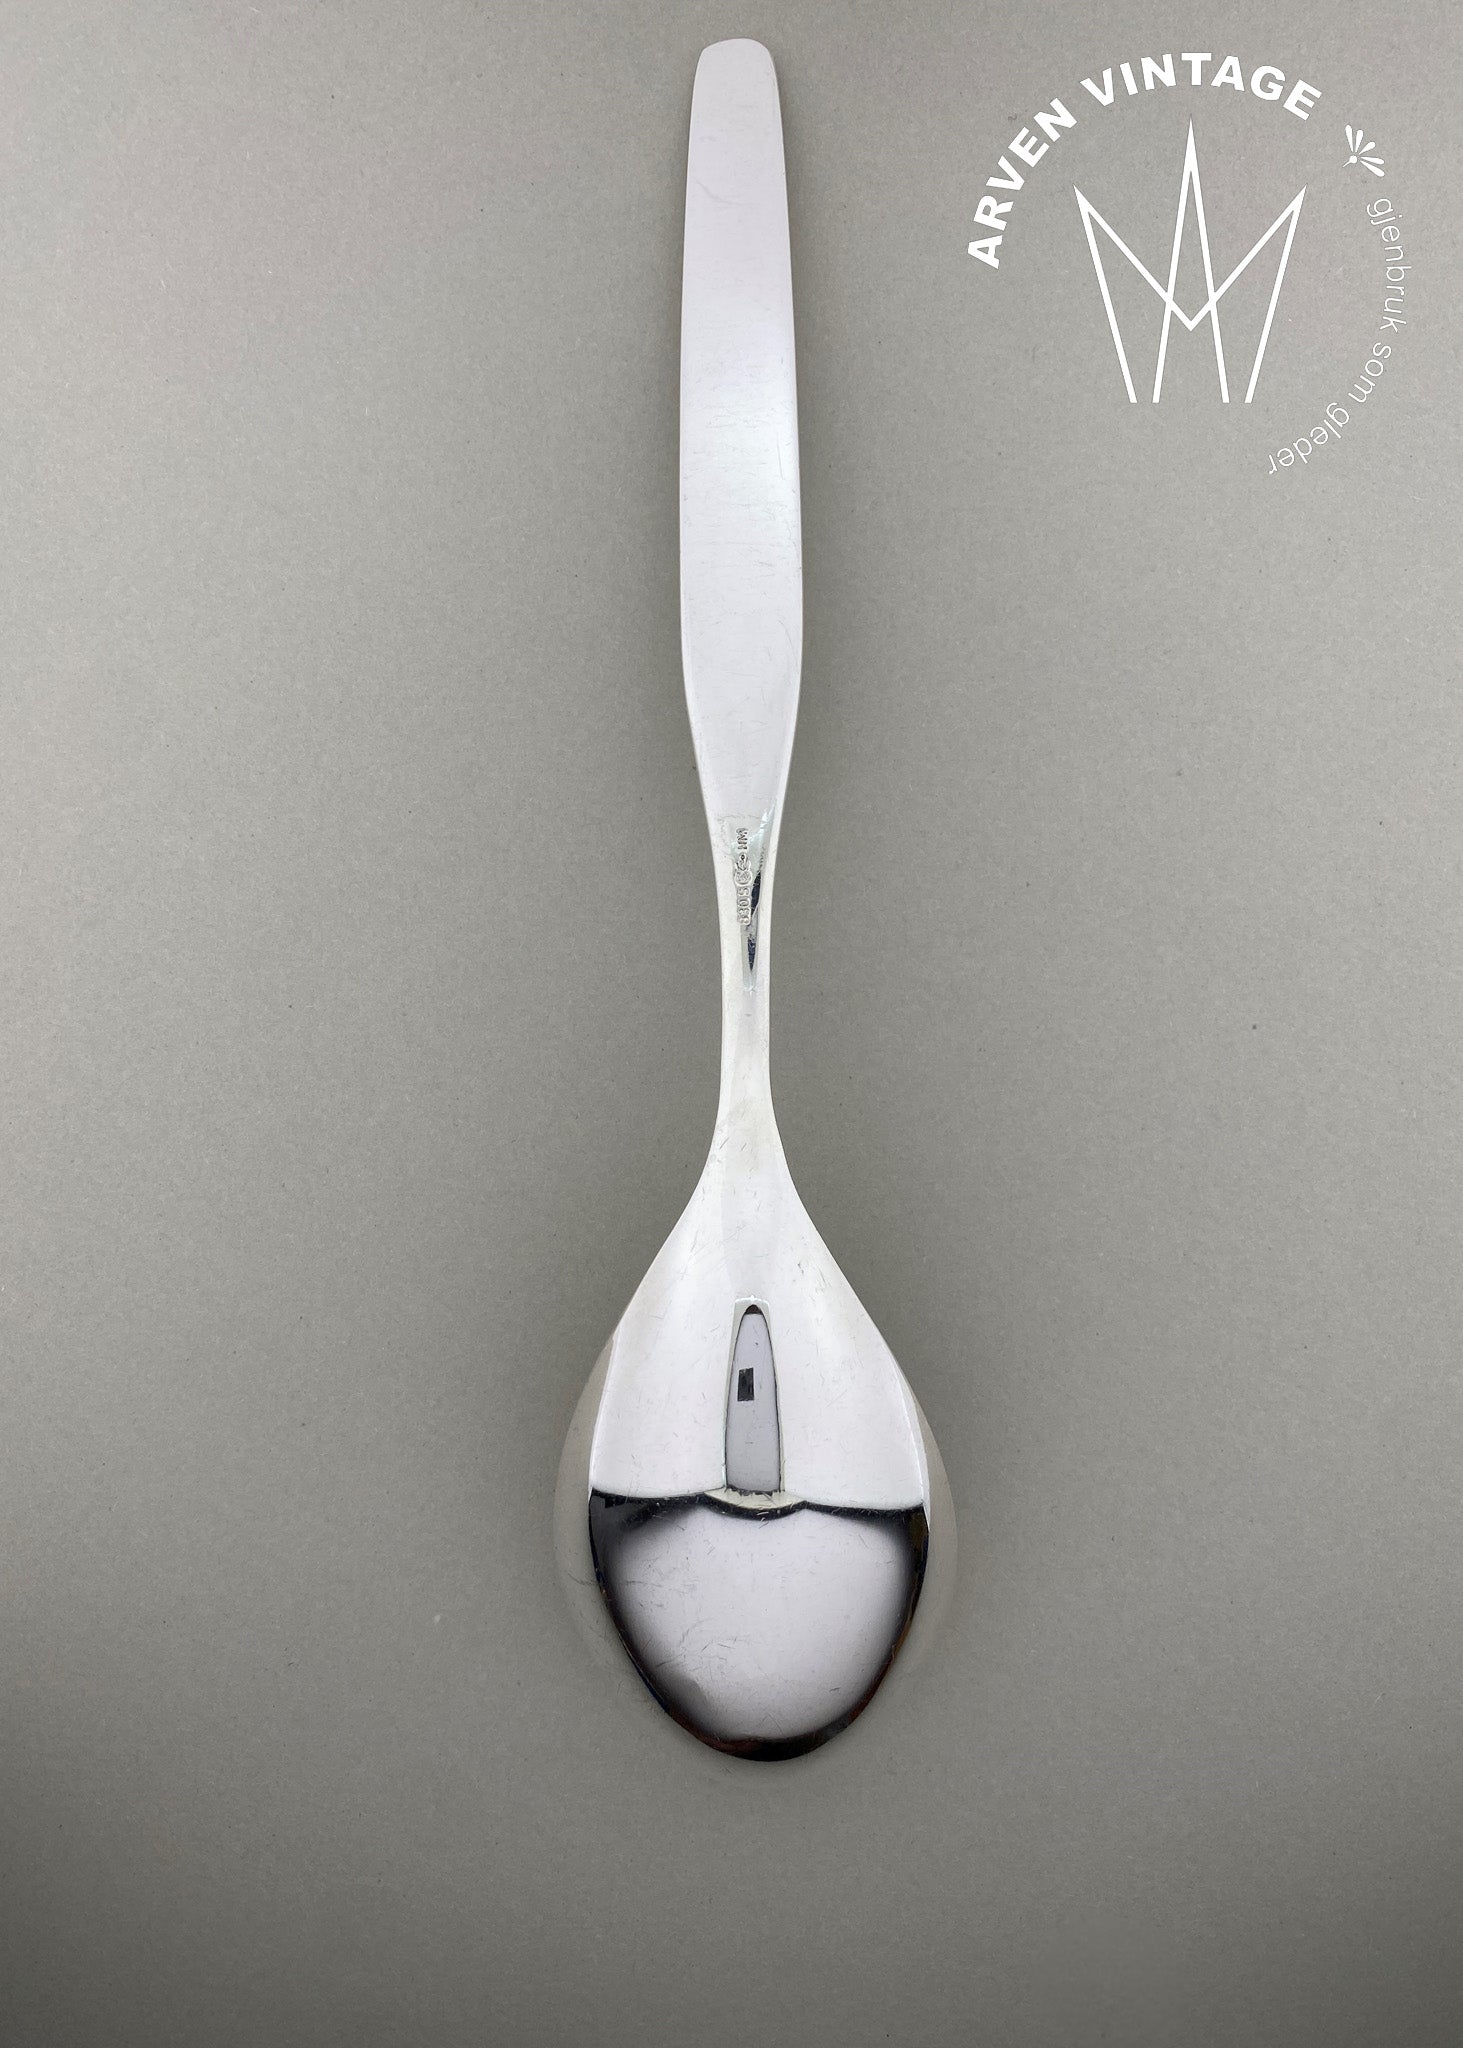 Vintage Aase serving spoon